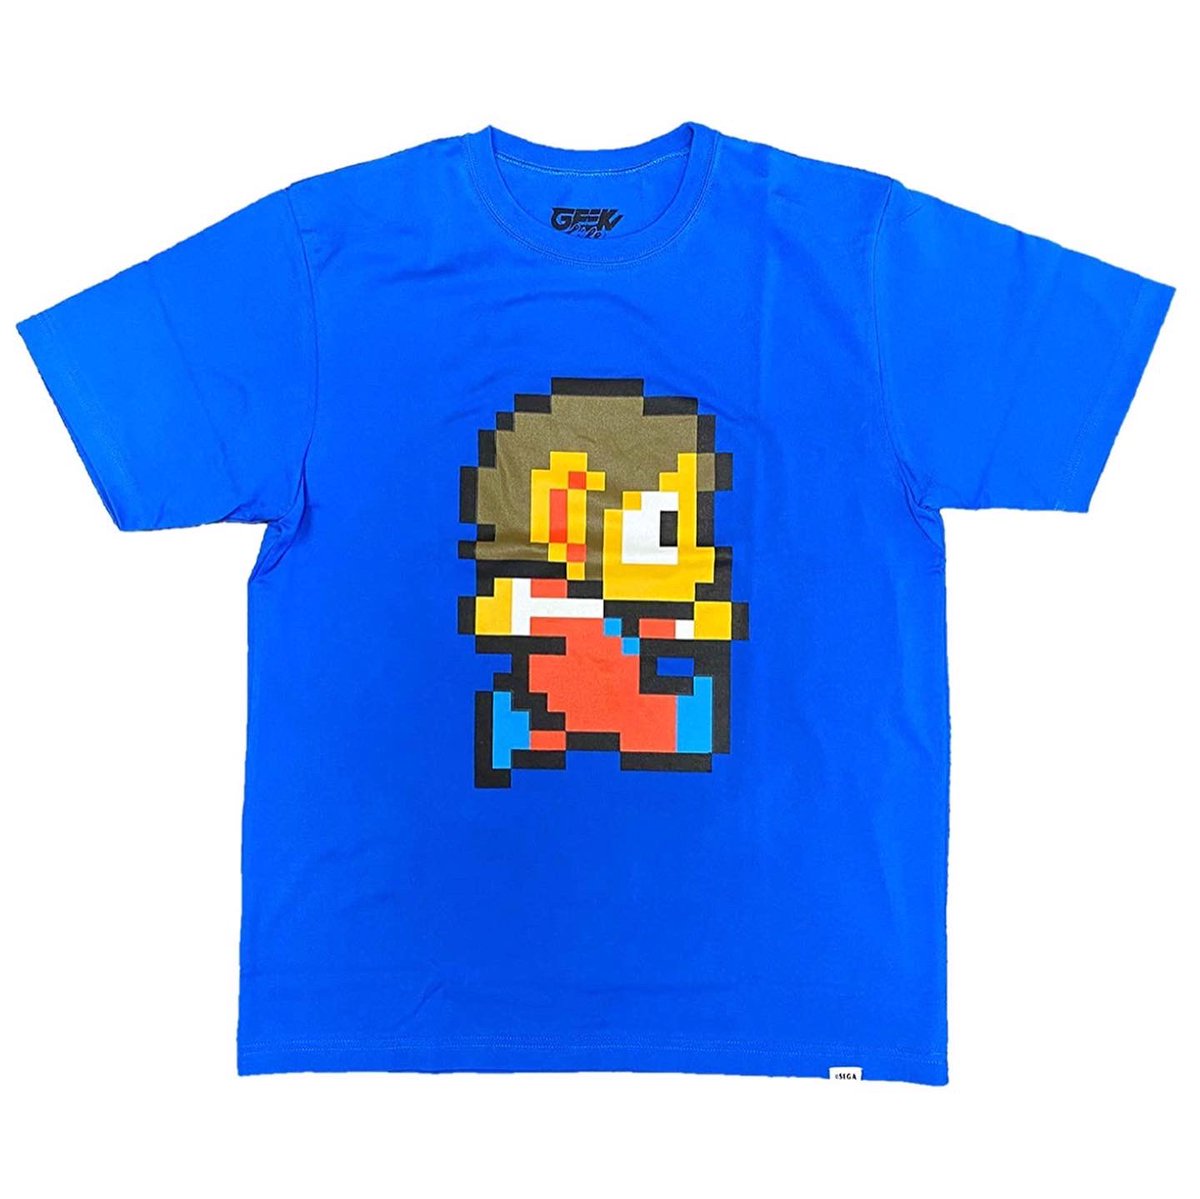 山吉屋 در توییتر 発売中 アレックスキッド でか ドット ワンポイントステッチ Tシャツ セガ消し付 Geeklifejp セガの名作を集めた セガ レトロゲーム Tシャツ コレクション ラインナップはセガの80年代を代表するキャラクター アレックスキッド